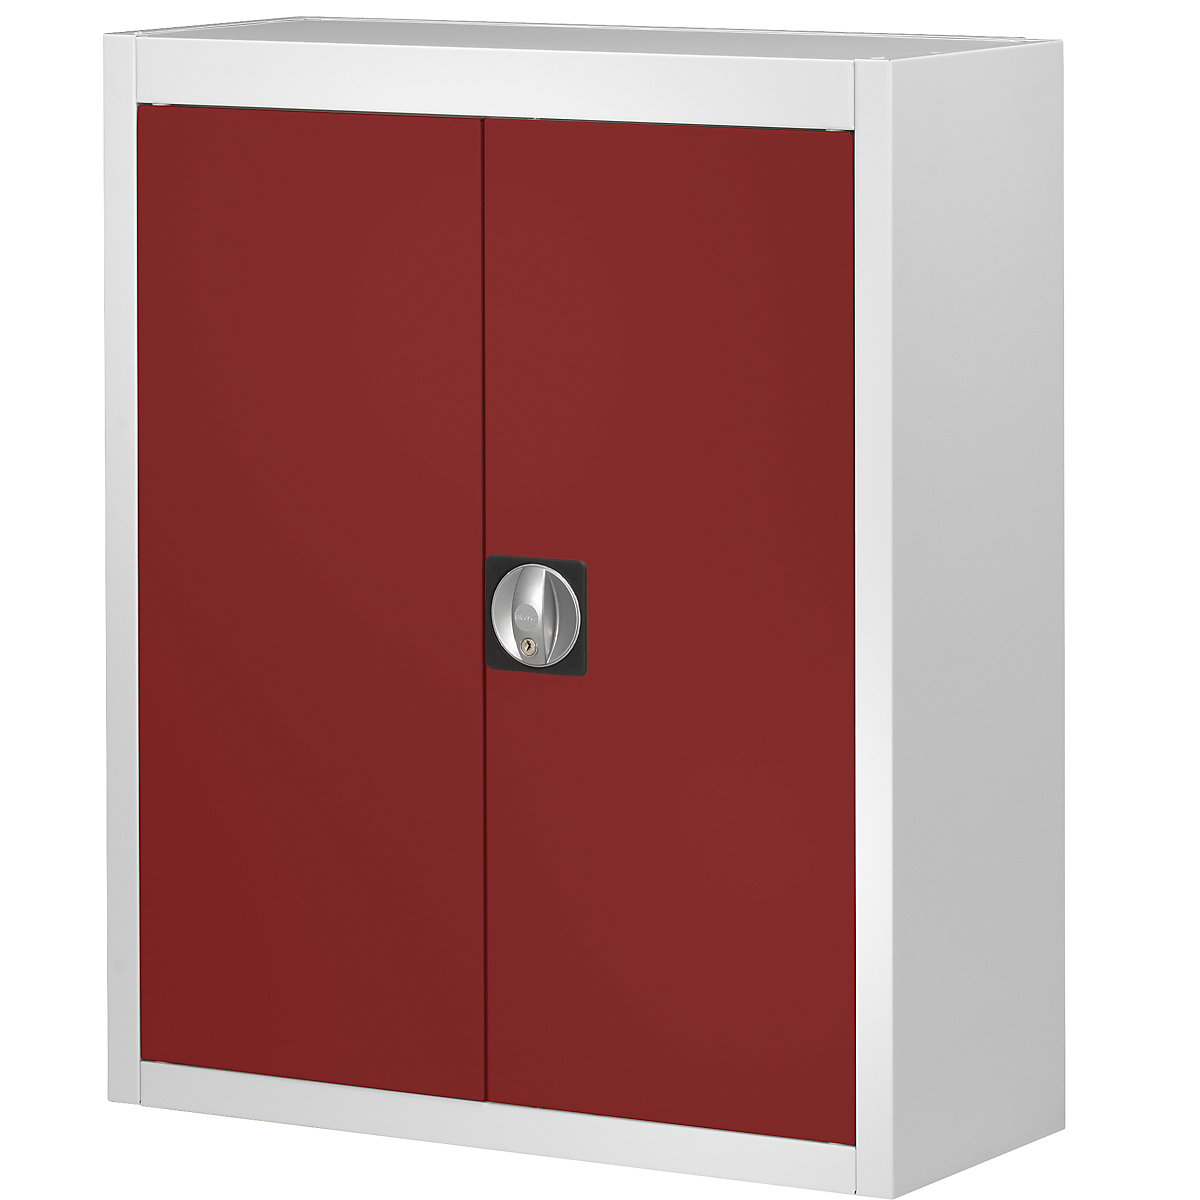 Rekesztároló szekrény, nyitott tárolódobozok nélkül – mauser, ma x szé x mé 820 x 680 x 280 mm, kétszínű, szürke váz, piros ajtó, 3 db-tól-3